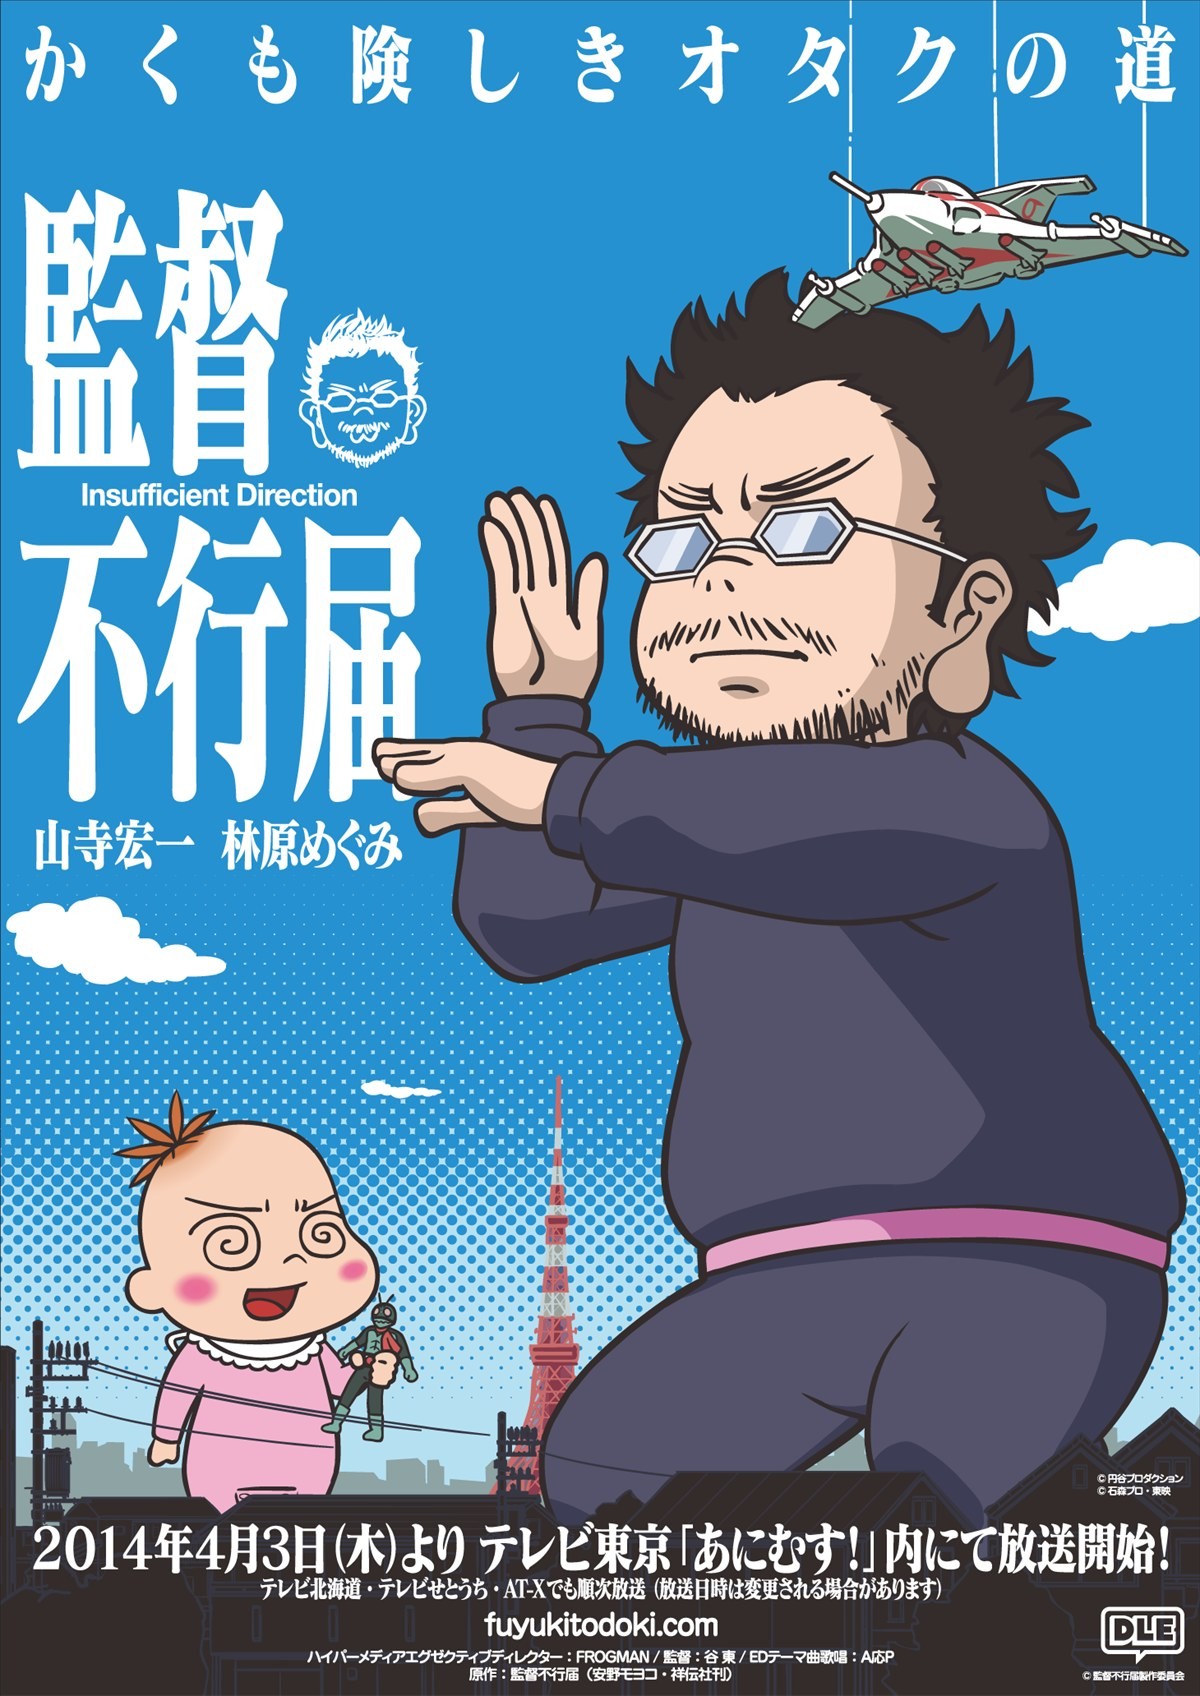 アンノ夫妻を描くコミックエッセイ『監督不行届』、DLE制作でアニメ化決定